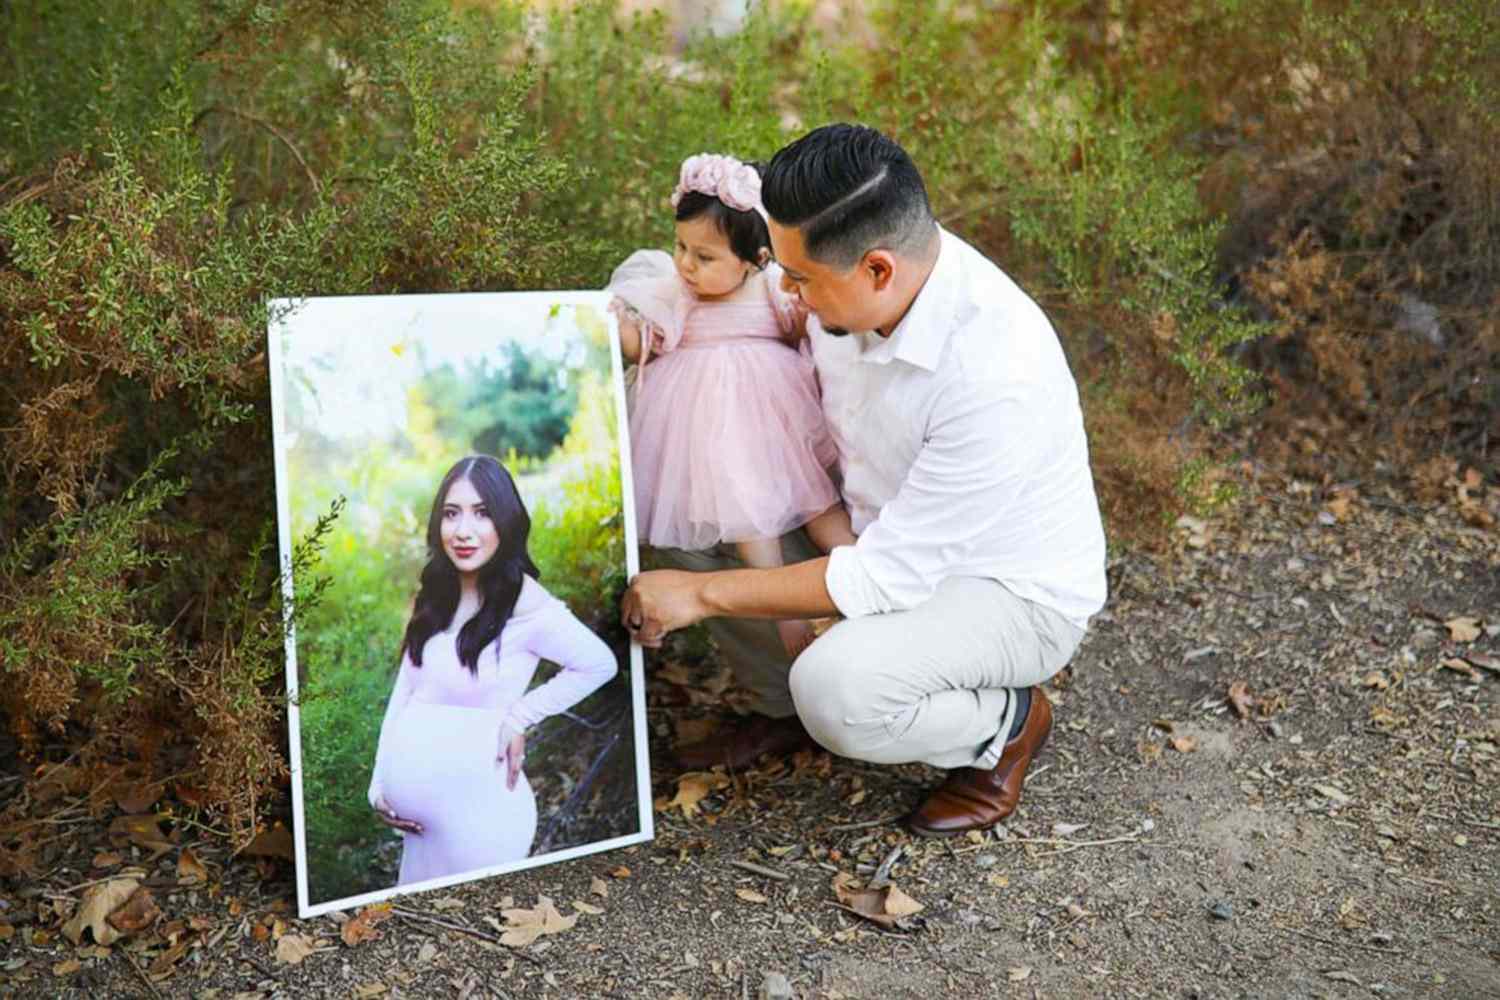 Padre recuerda a su esposa fallecida en emotiva sesión de fotos con su bebé  y sintió la presencia de su amada | People en Español